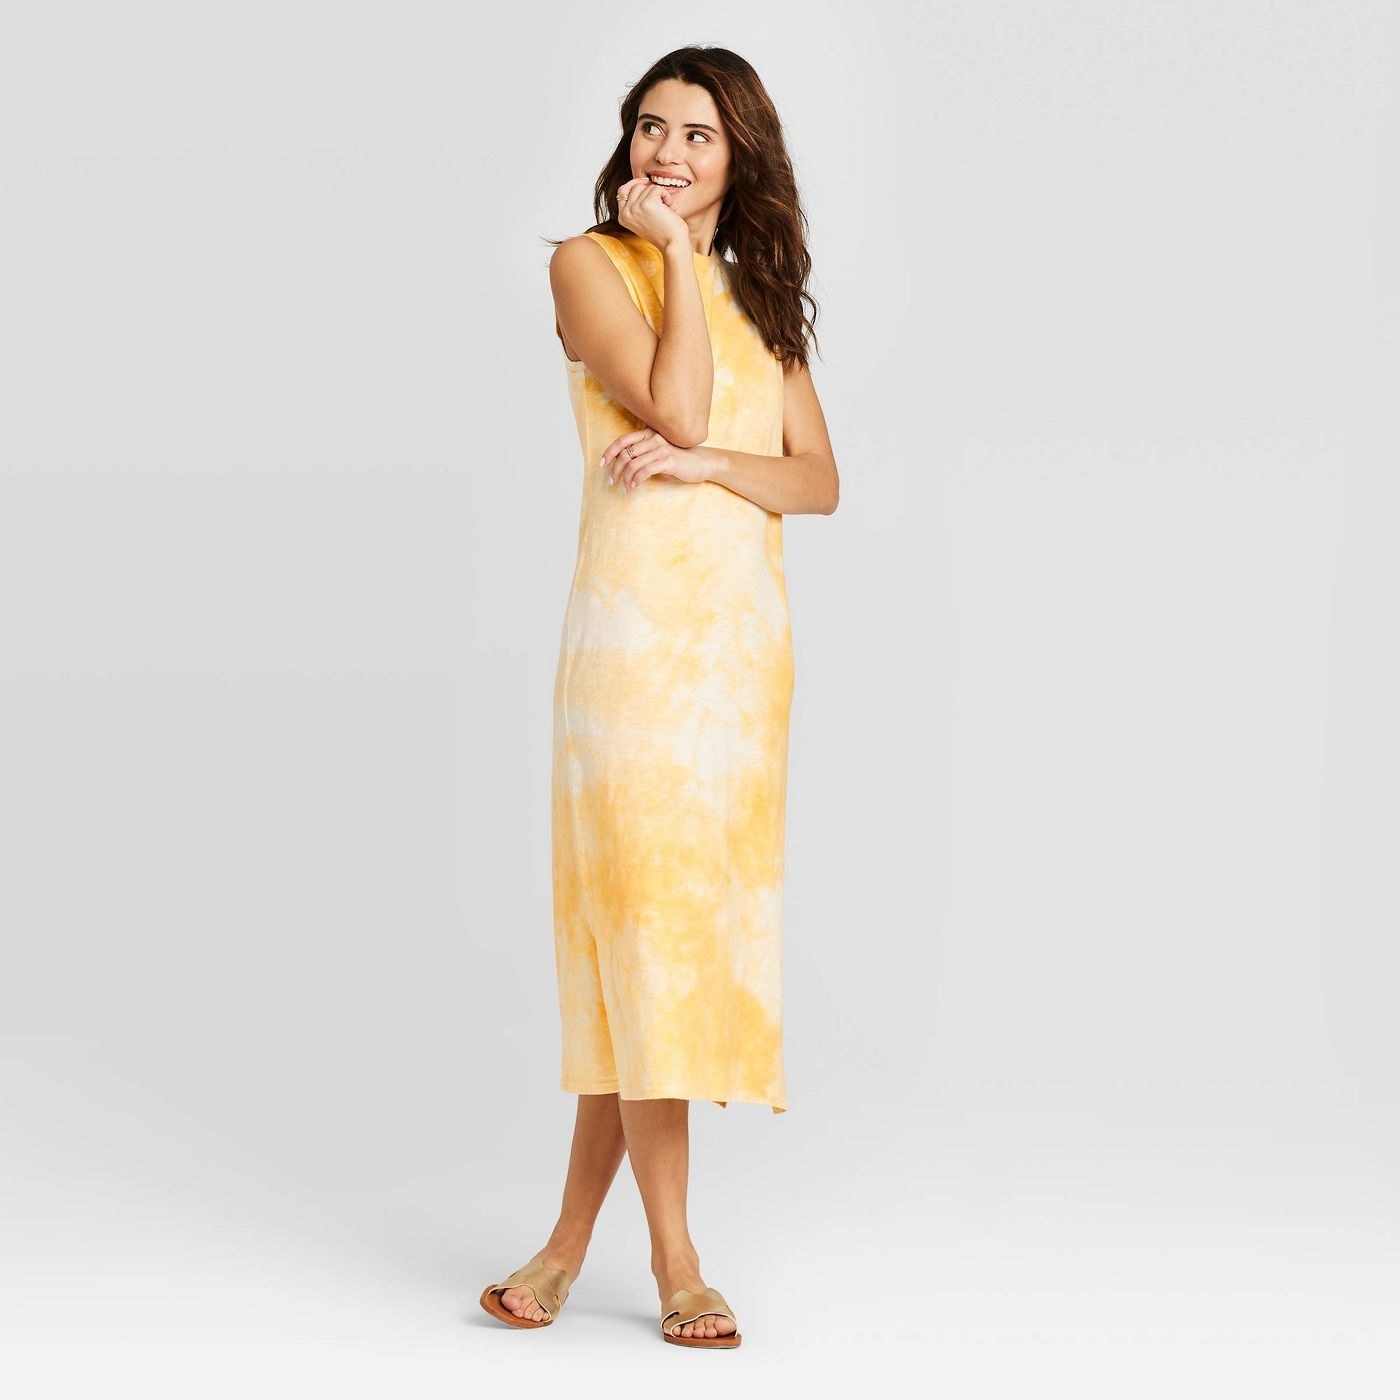 Model in yellow tie dye sleeveless dress